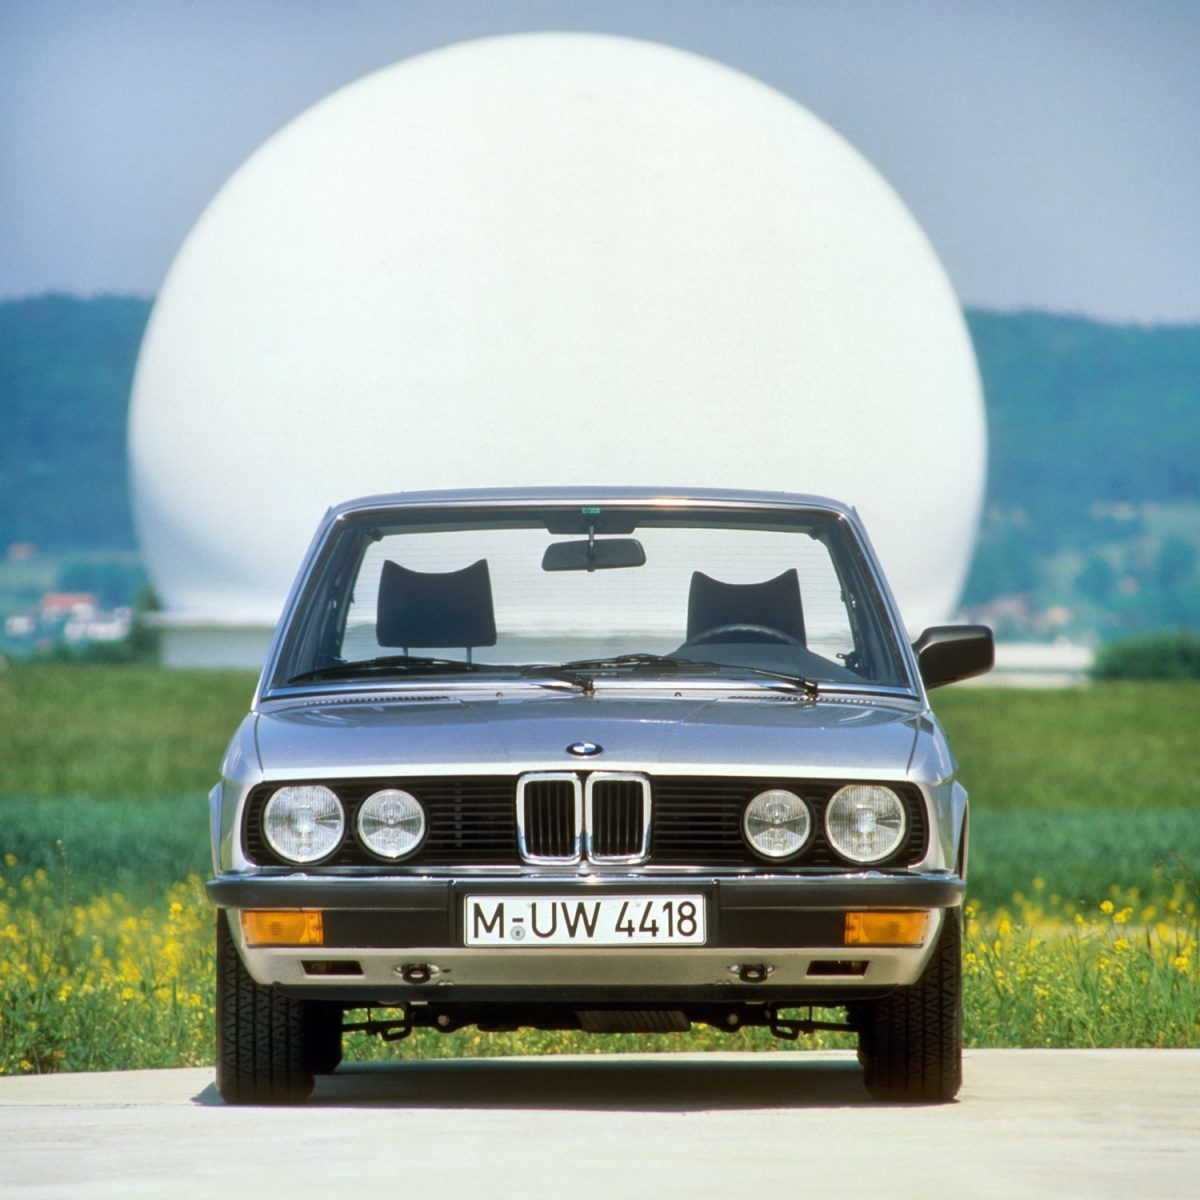 BMW řady 5 již můžete objednávat i v České republice. Auto s hlubokou historií bude ještě lepší